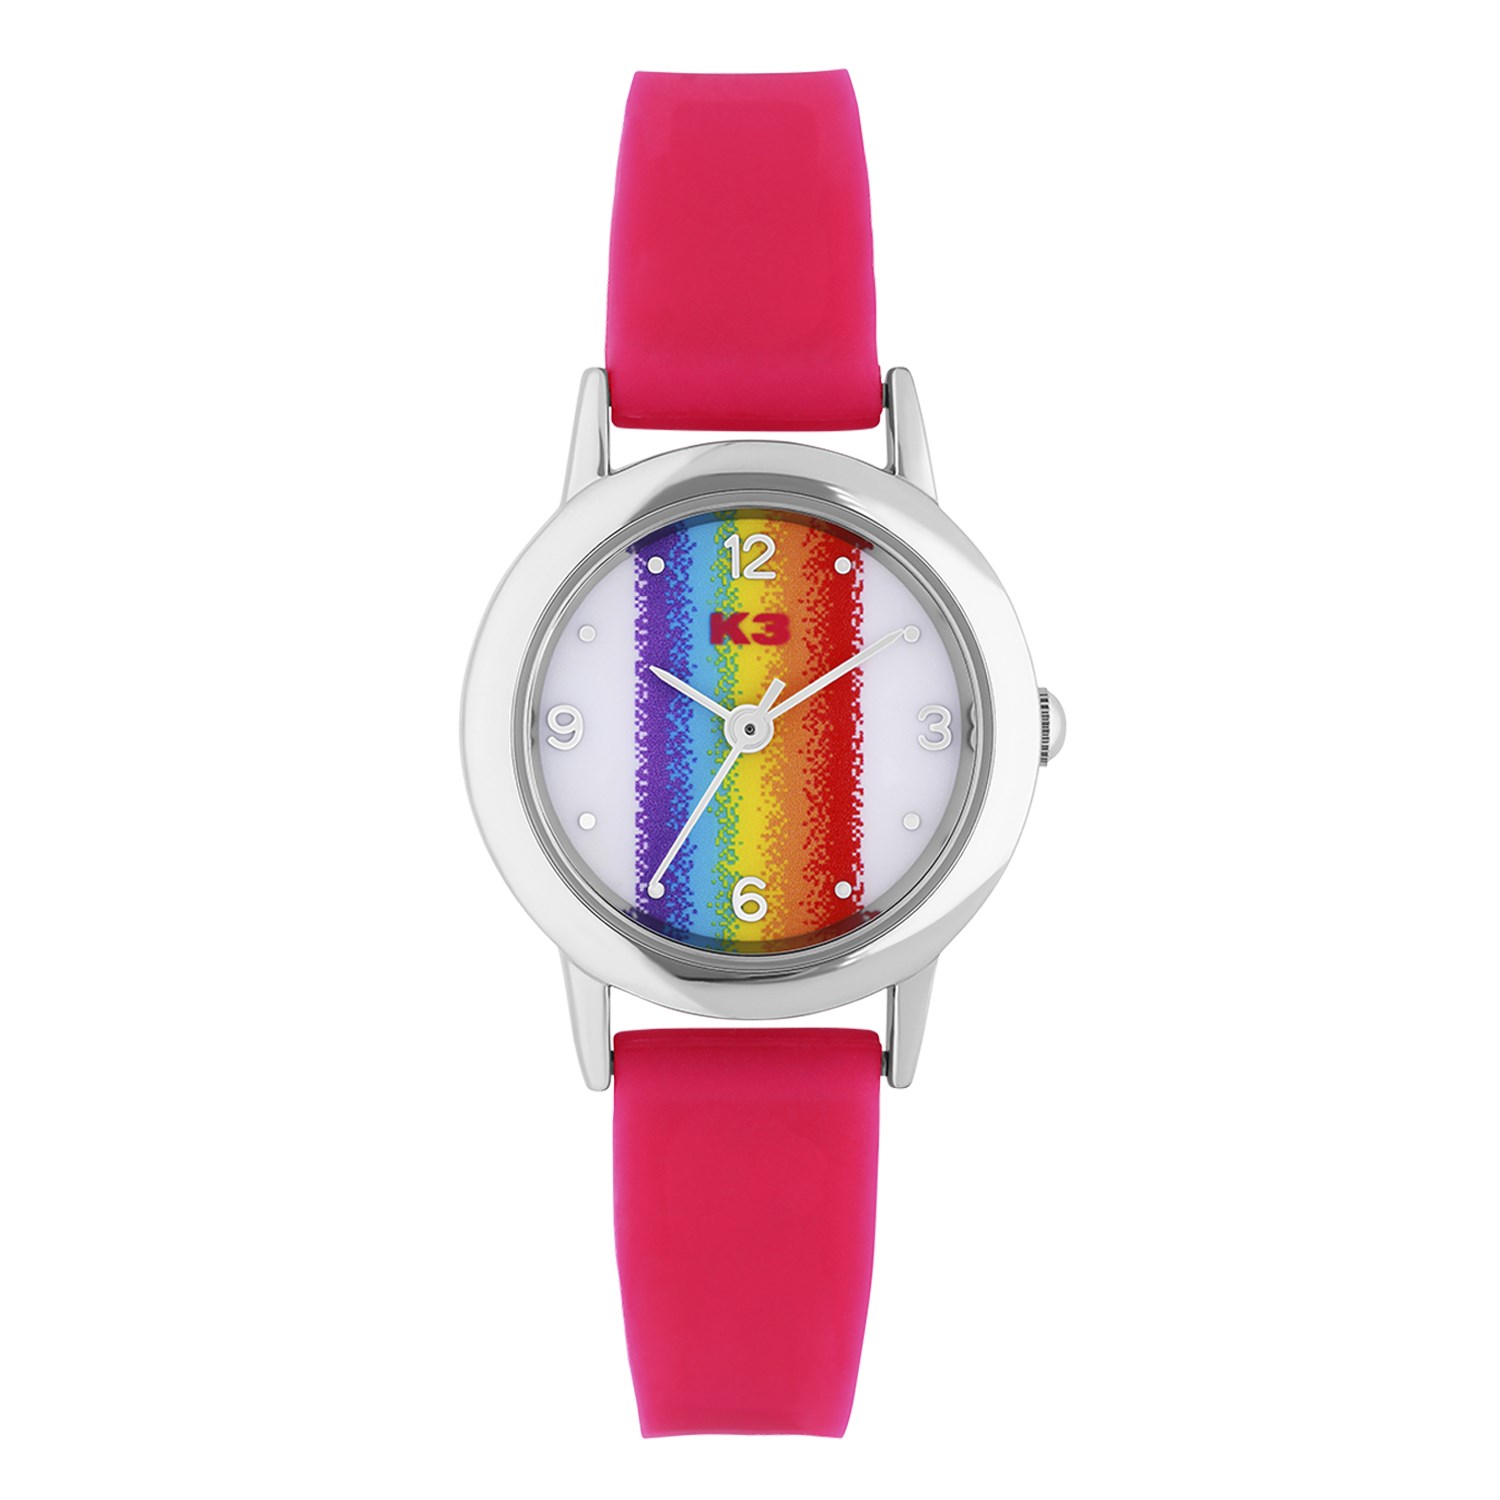 K3 Kinder Horloge Regenboog Met Rubberen Band Roze